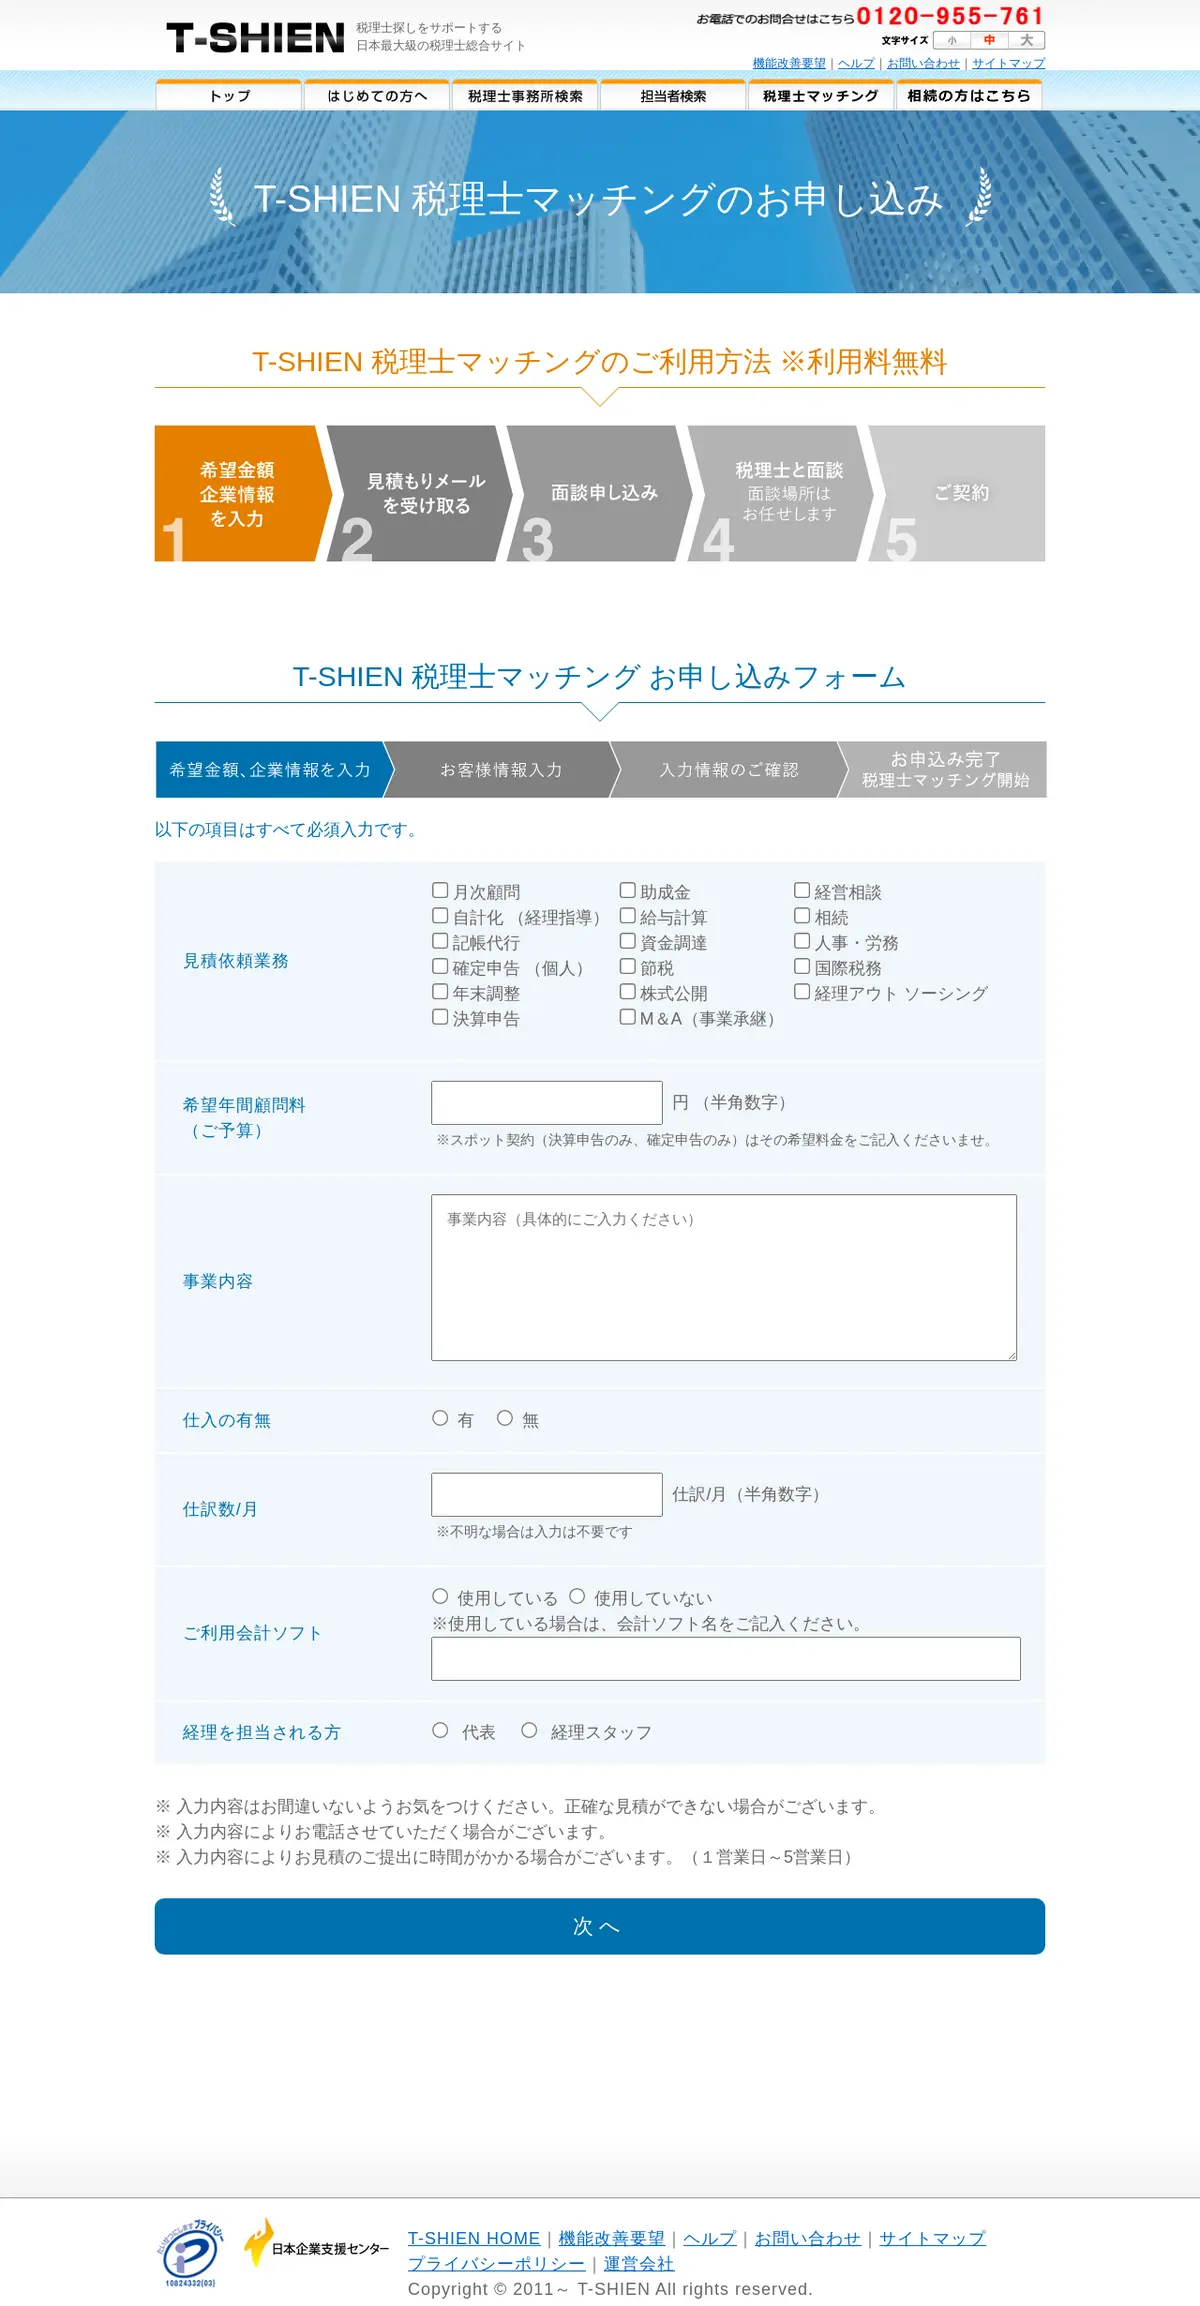 キャプチャ画面 会社名:日本企業支援センター株式会社プロジェクト名:T-SHIEN 画面名:申し込みフォーム デバイス名:PCカテゴリ:WEB・インターネットタグ:申し込みフォーム